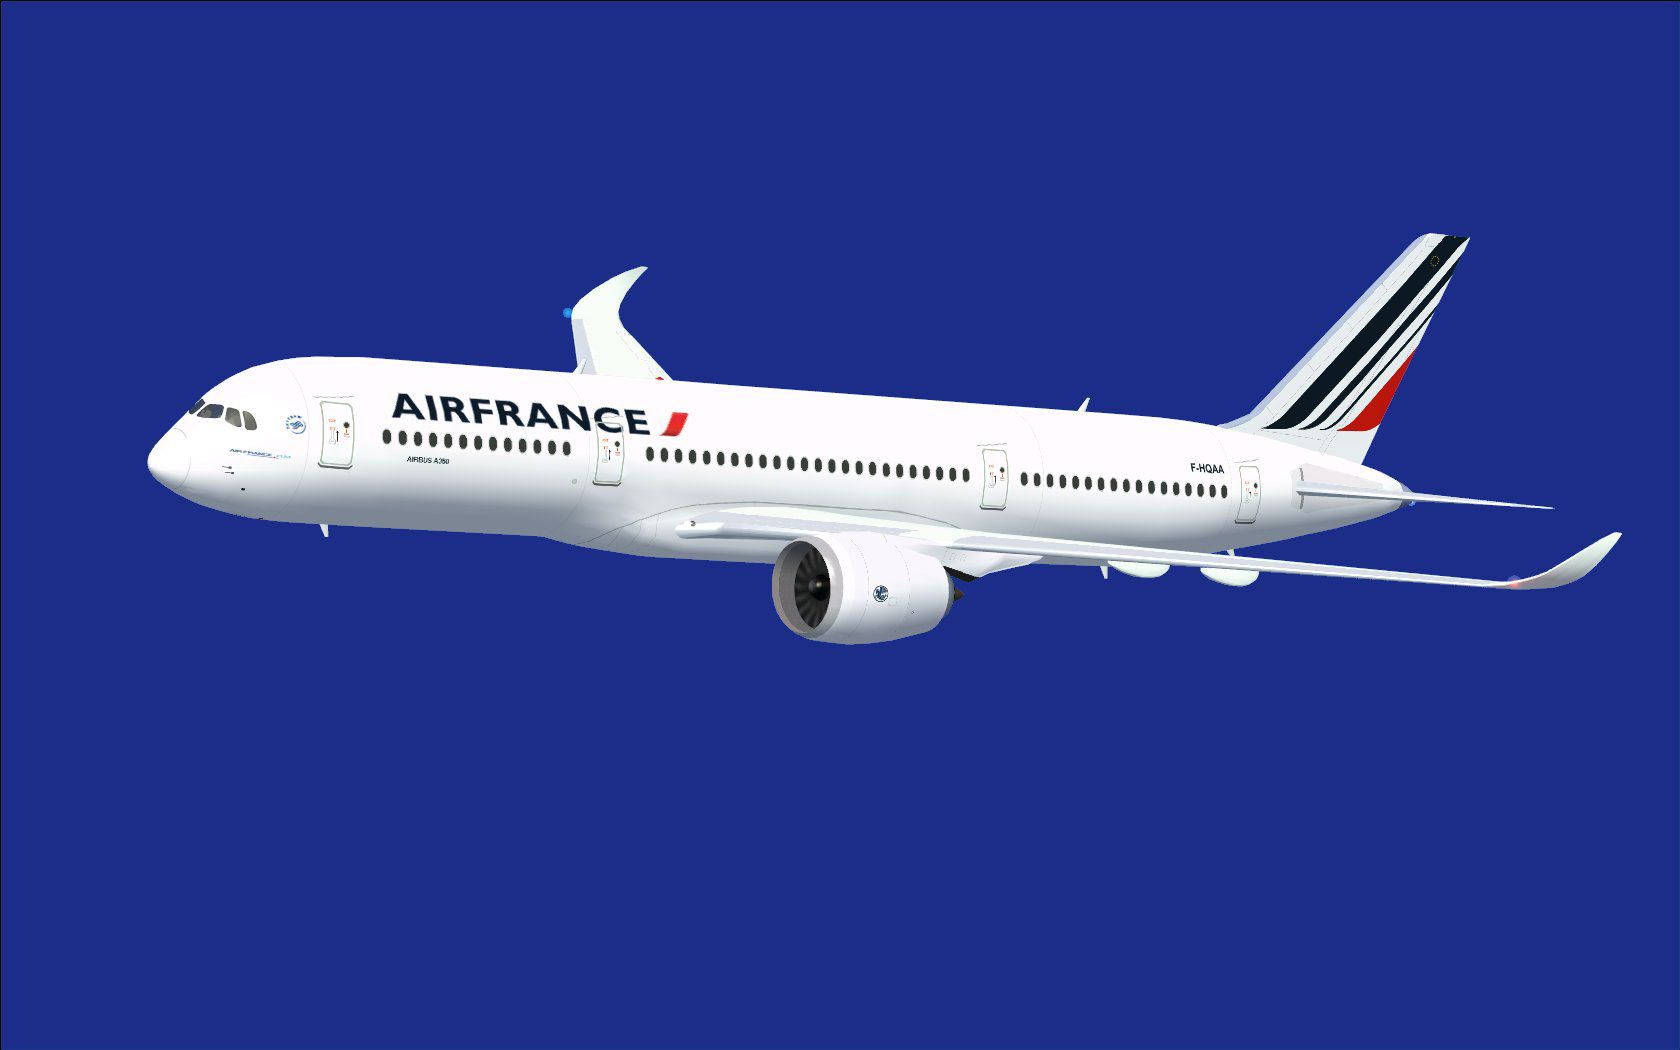 Air France Airbus A350-800 Xwb In Blue Wallpaper